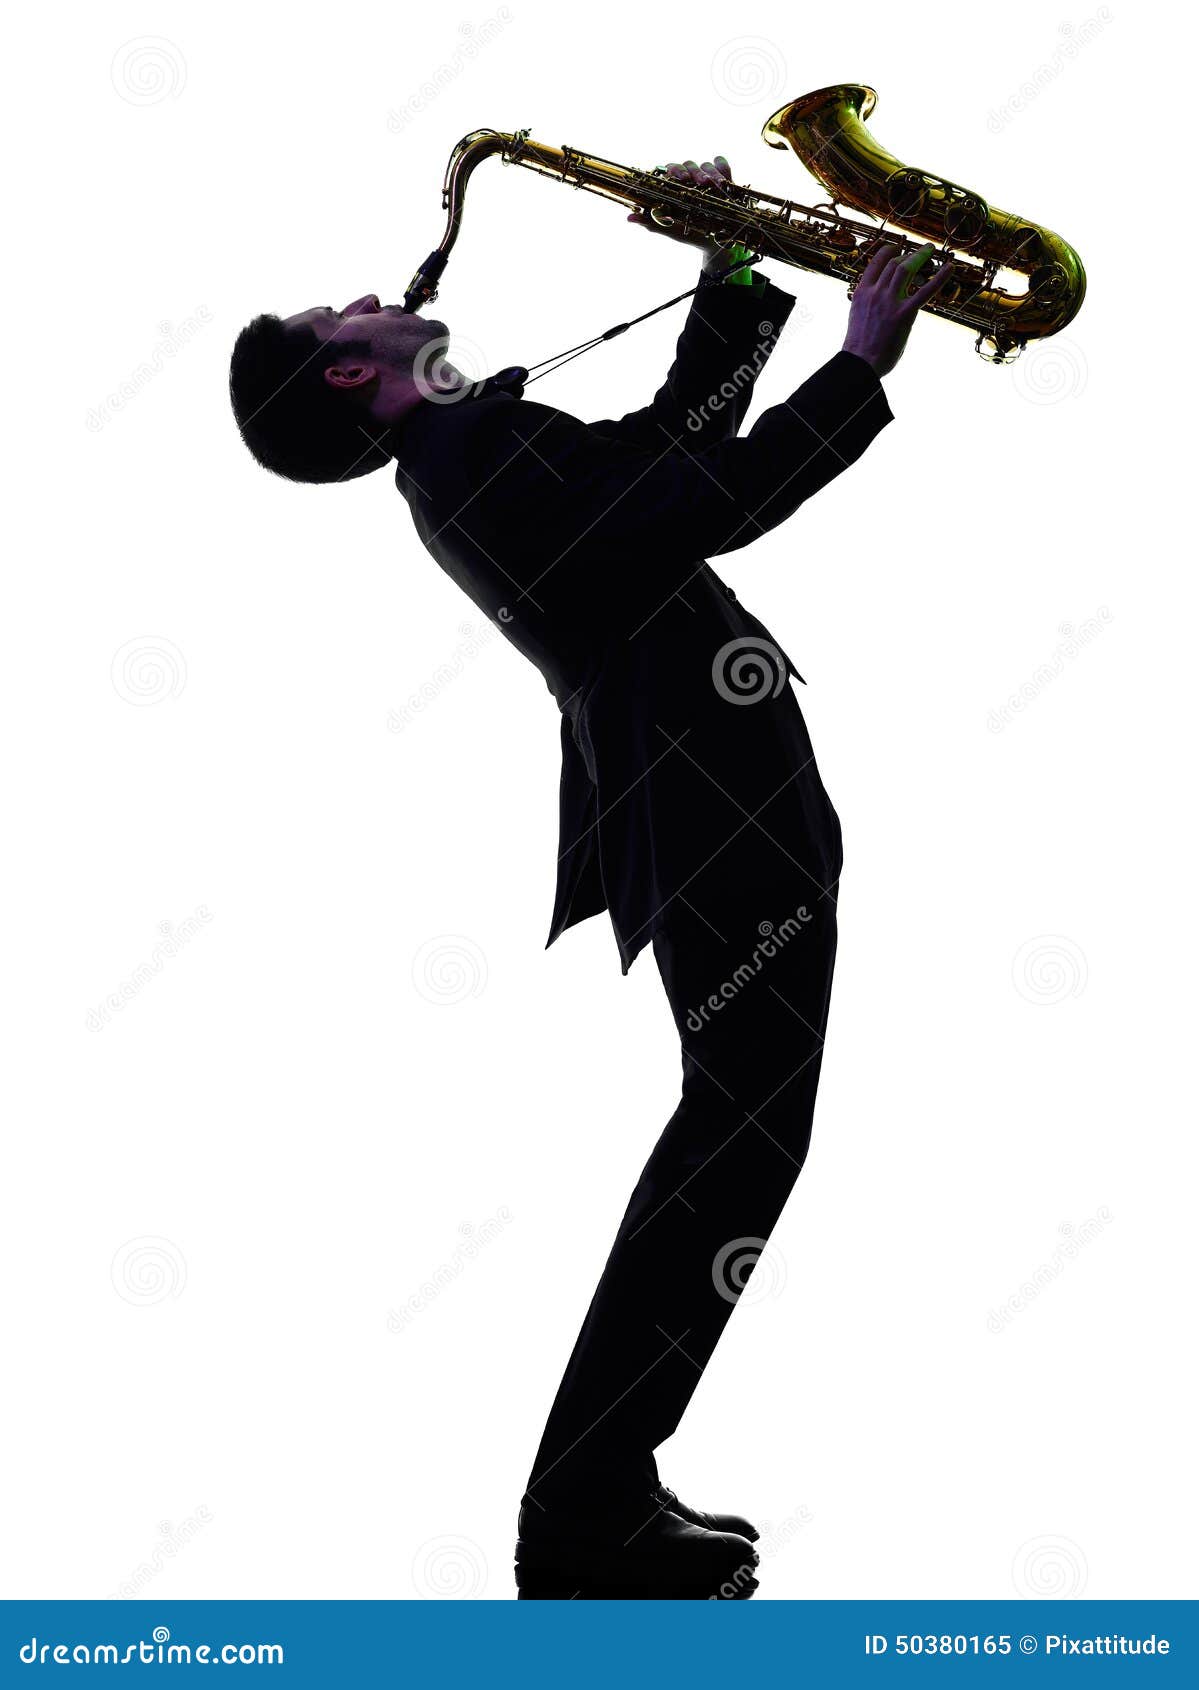 https://thumbs.dreamstime.com/z/saxophoniste-d-homme-jouant-la-silhouette-de-joueur-de-saxophone-50380165.jpg